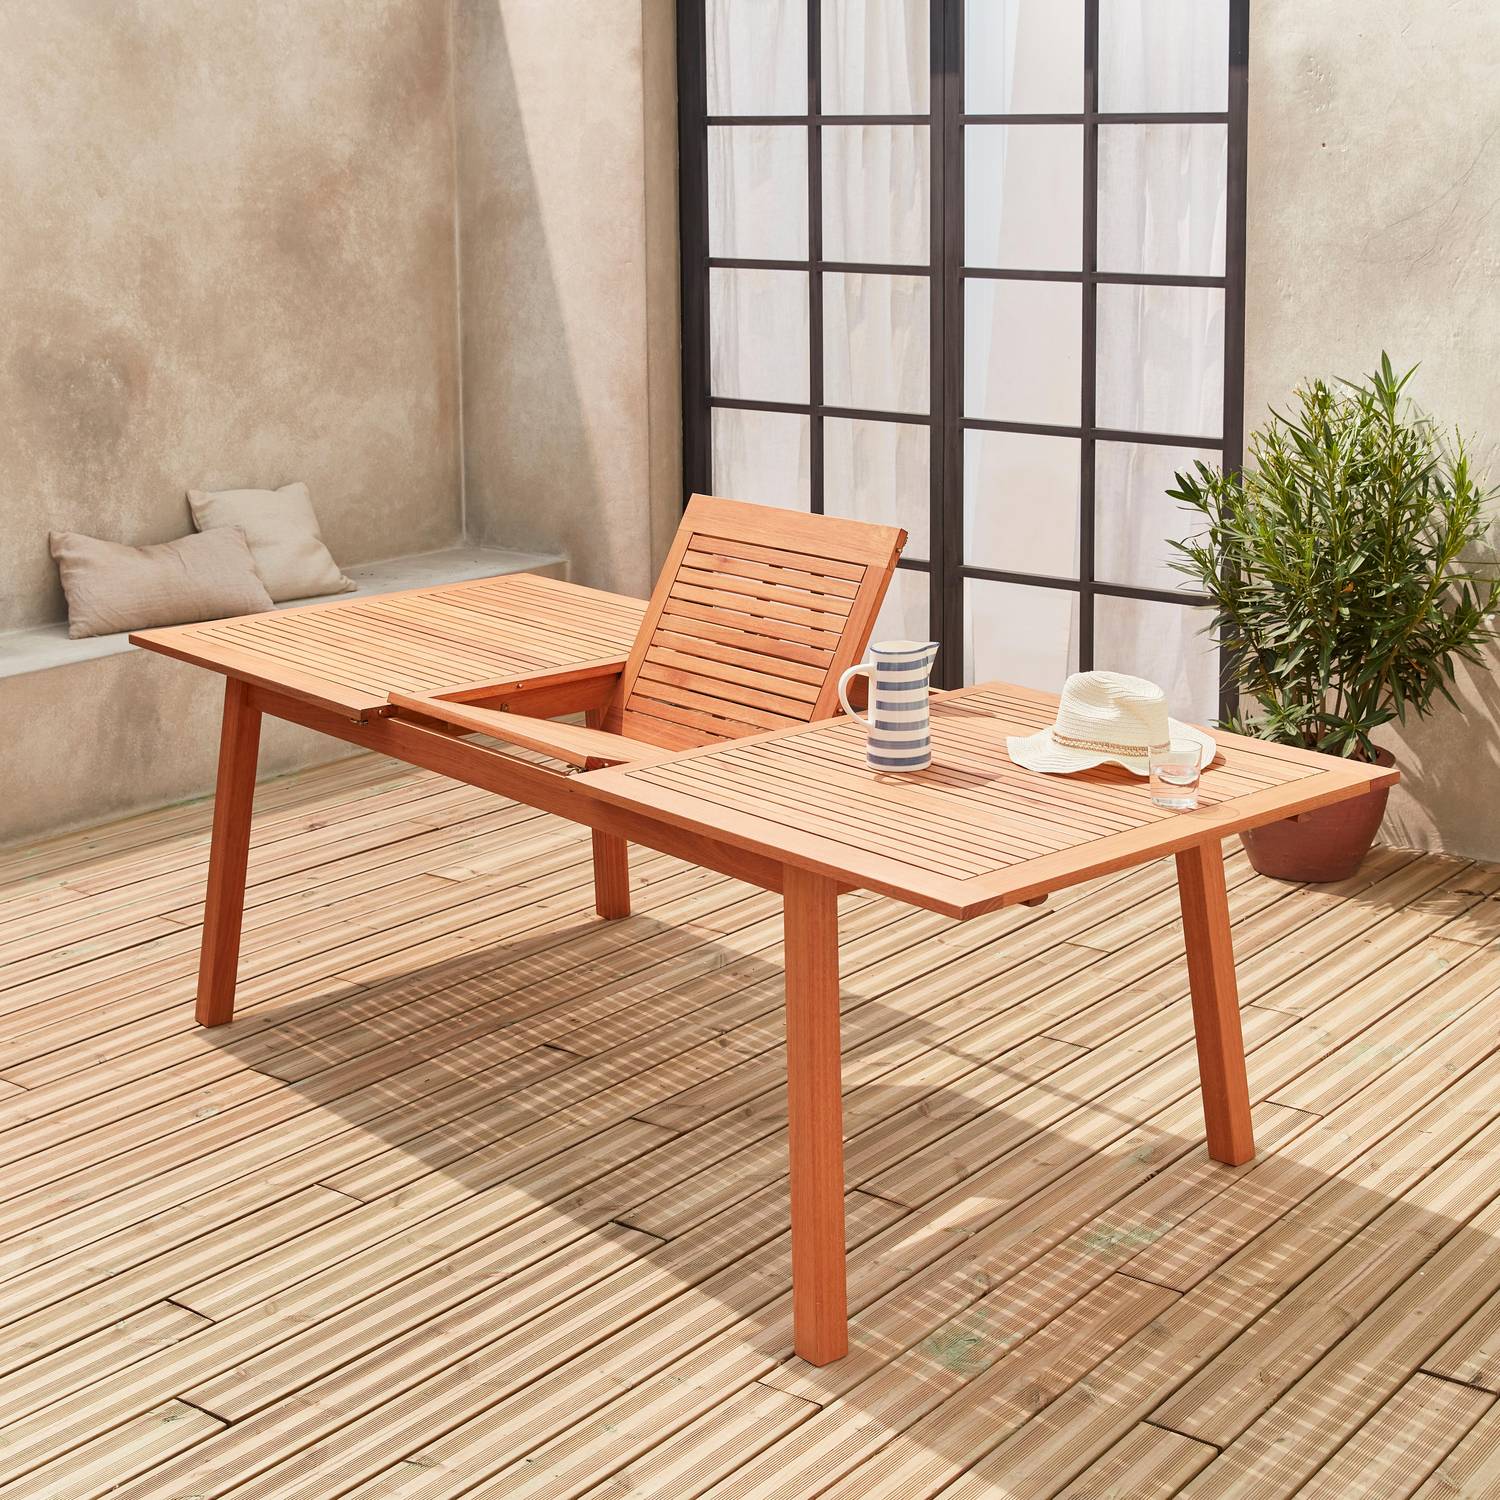 Tavolo da giardino, in legno, dimensioni: 180-240cm - modello: Almeria - Grande tavolo rettangolare con prolunga, in eucalipto FSC Photo3